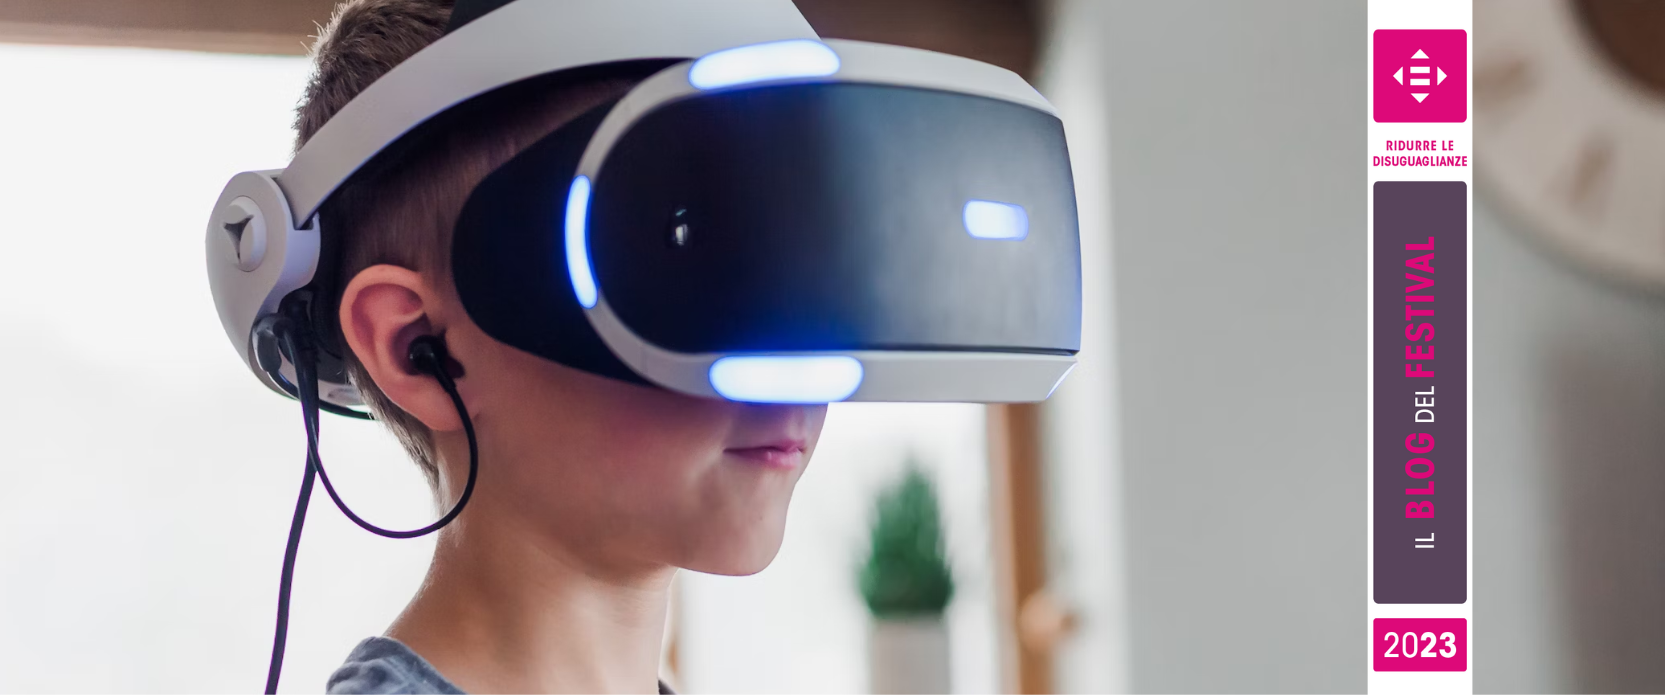 3D, realtà aumentata e realtà virtuale come mezzi di inclusione